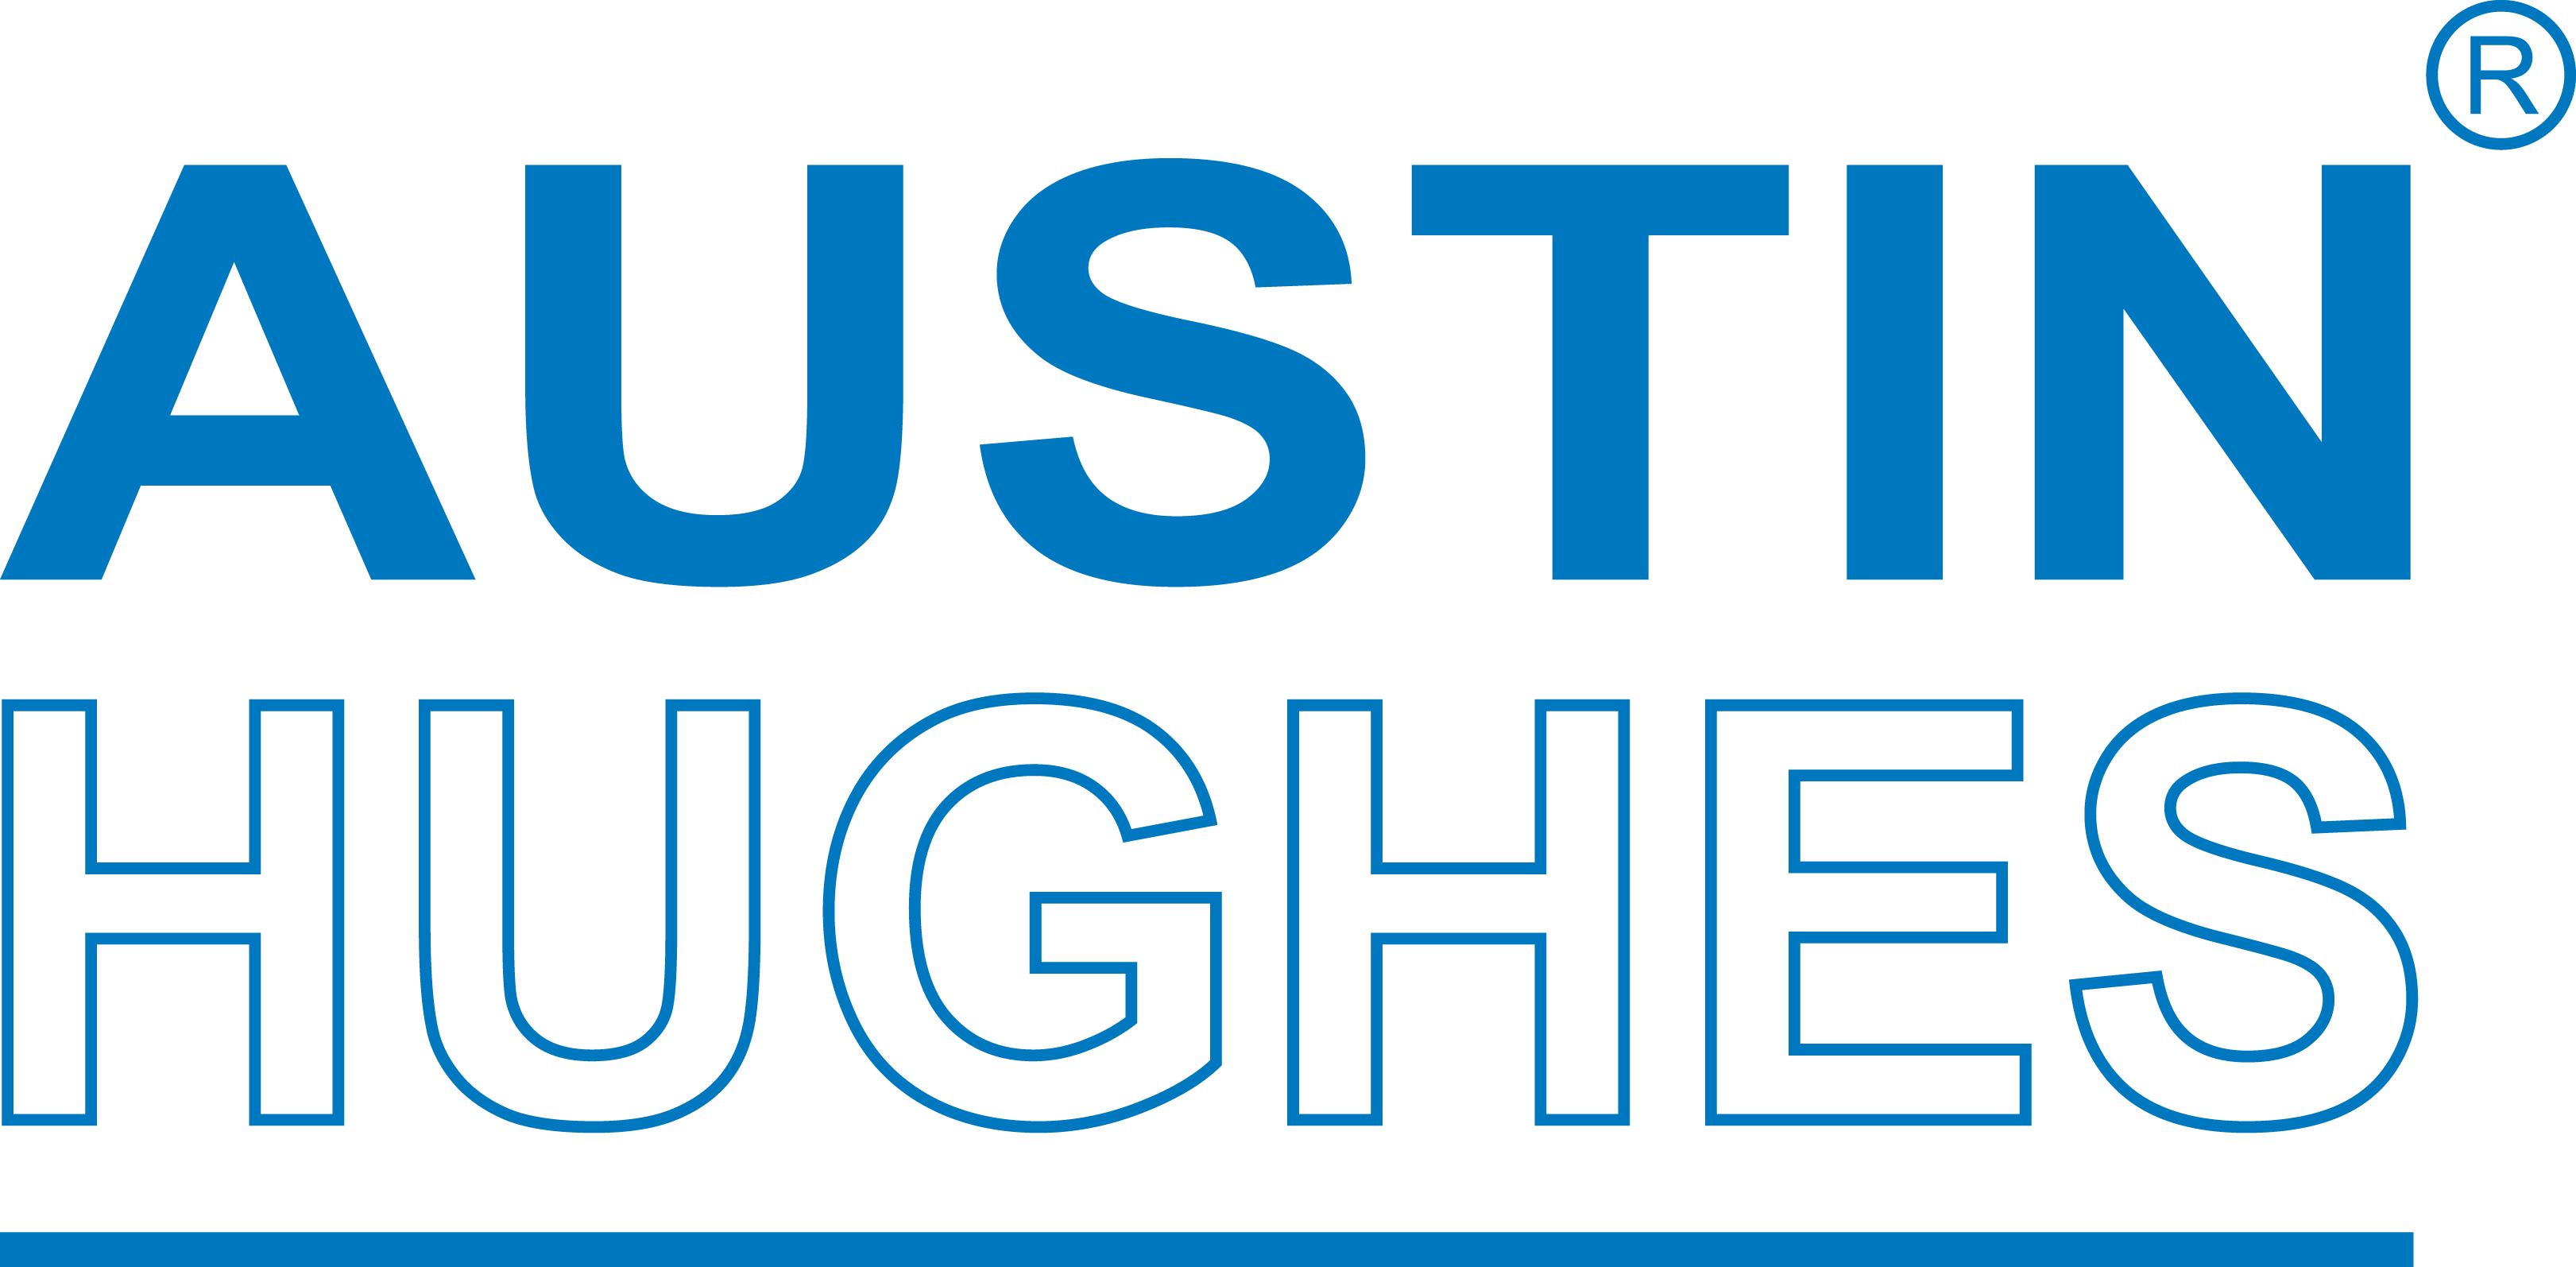 Austin Hughes Logo